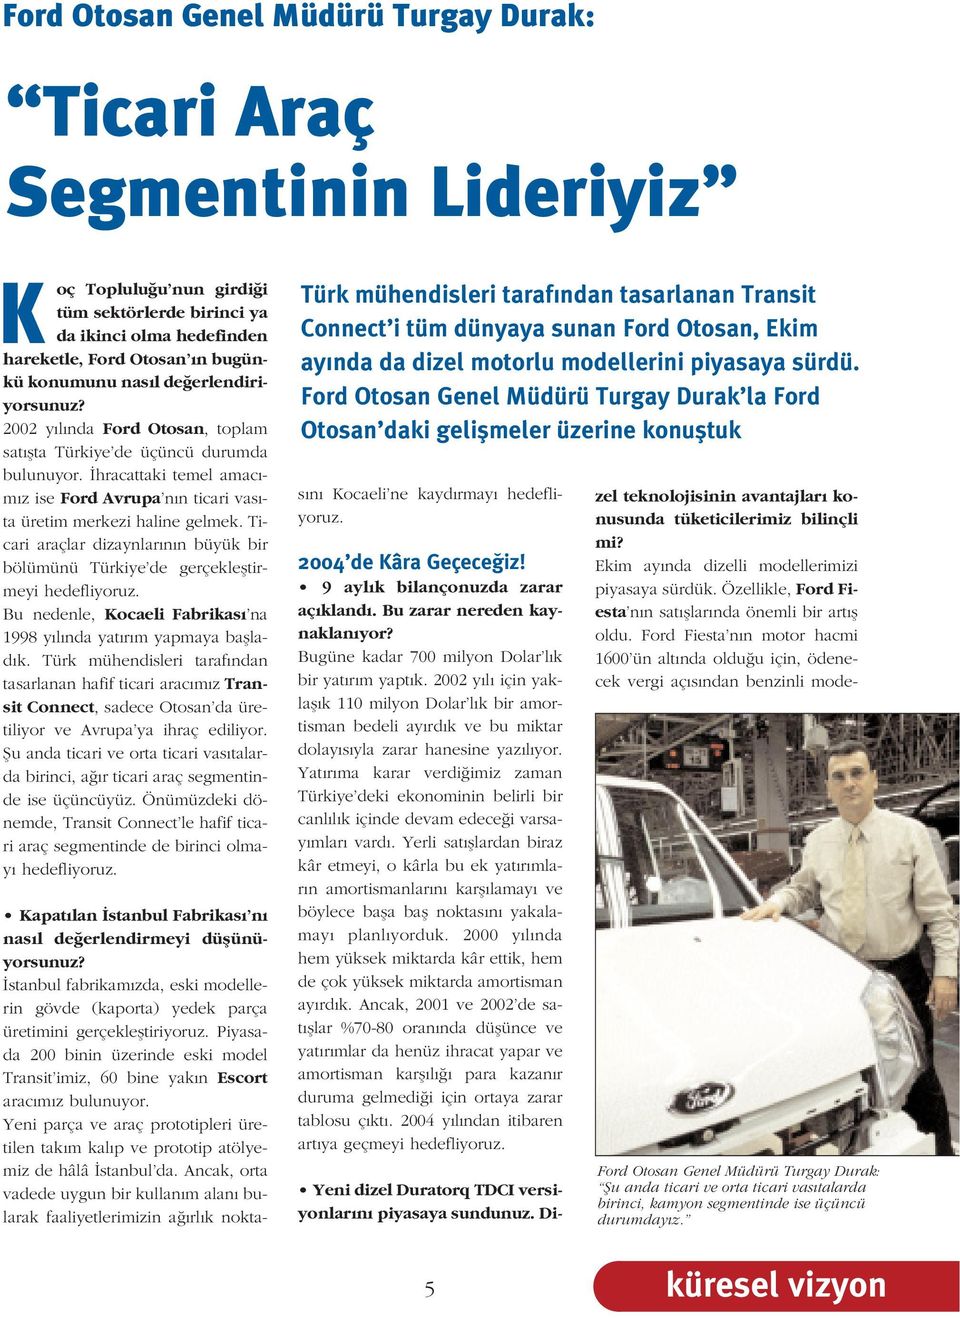 Ticari araçlar dizaynlar n n büyük bir bölümünü Türkiye de gerçeklefltirmeyi hedefliyoruz. Bu nedenle, Kocaeli Fabrikas na 1998 y l nda yat r m yapmaya bafllad k.